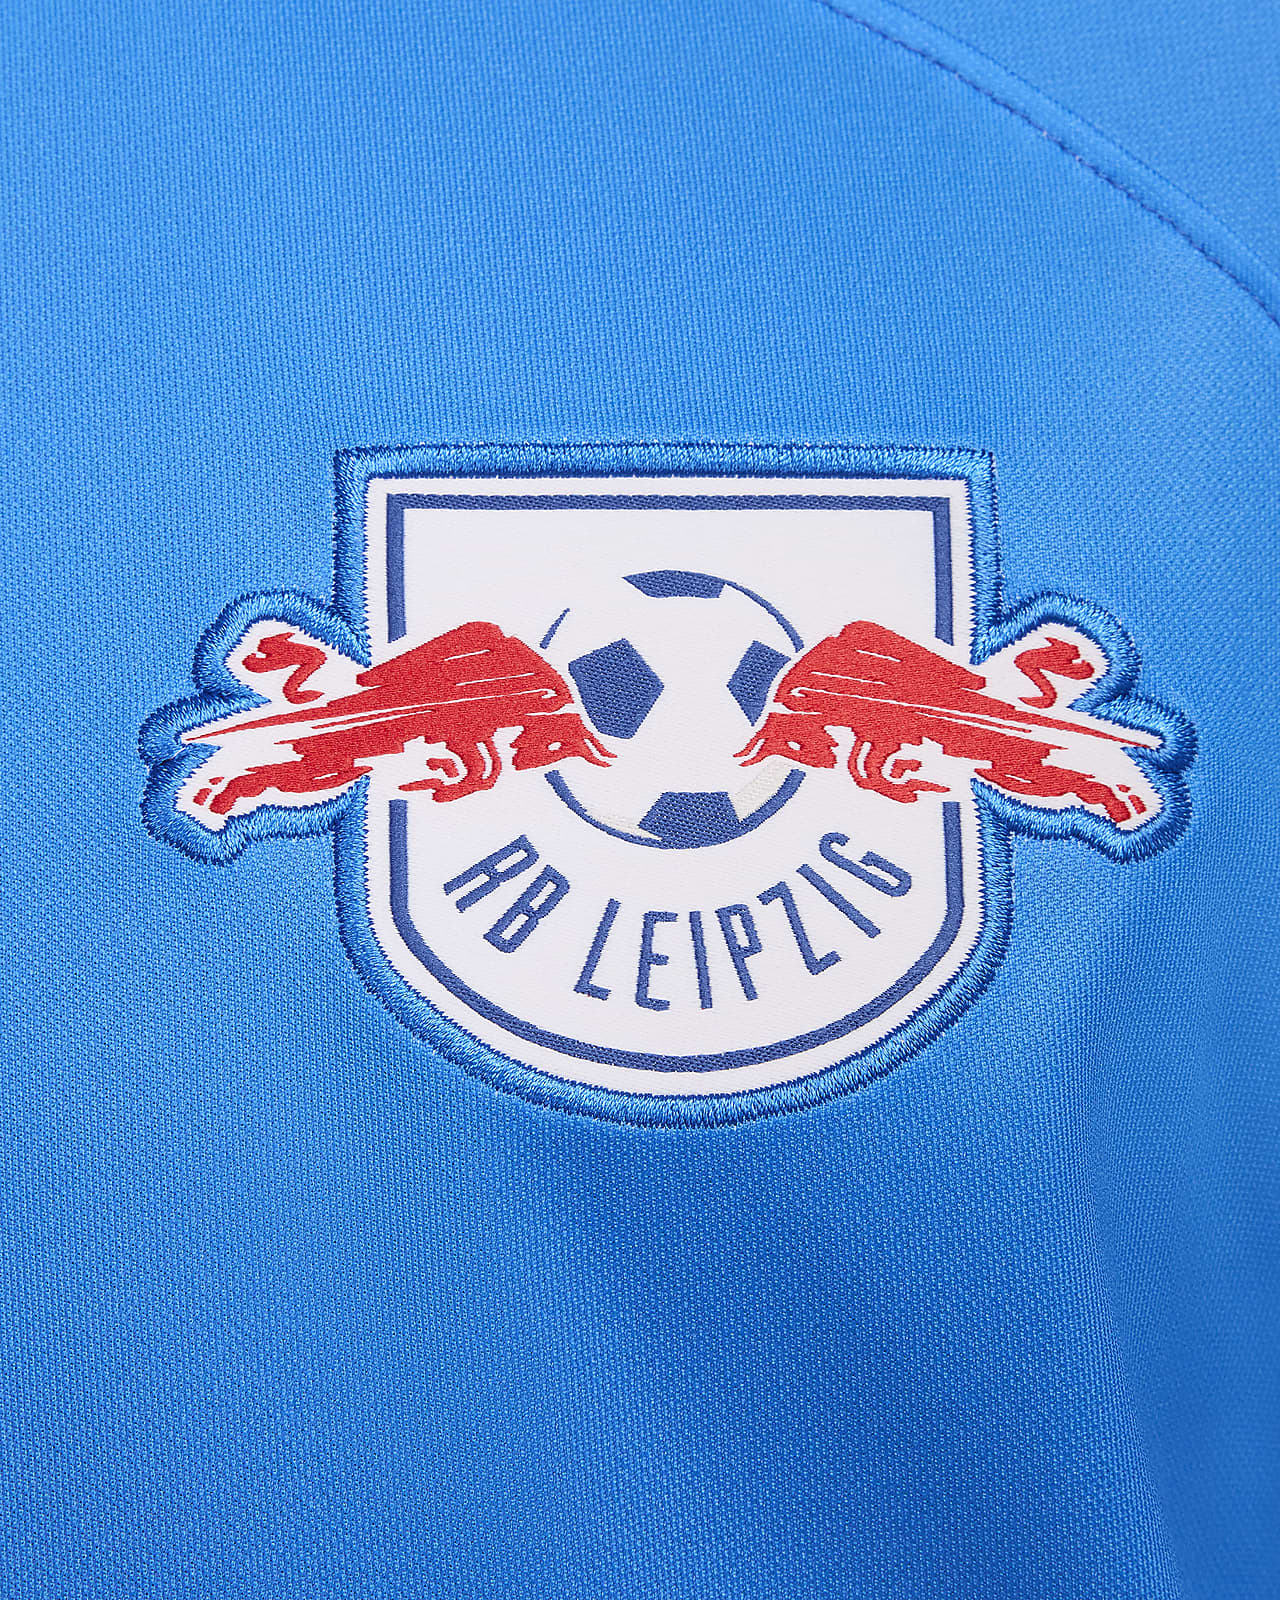 leipzig football shirt